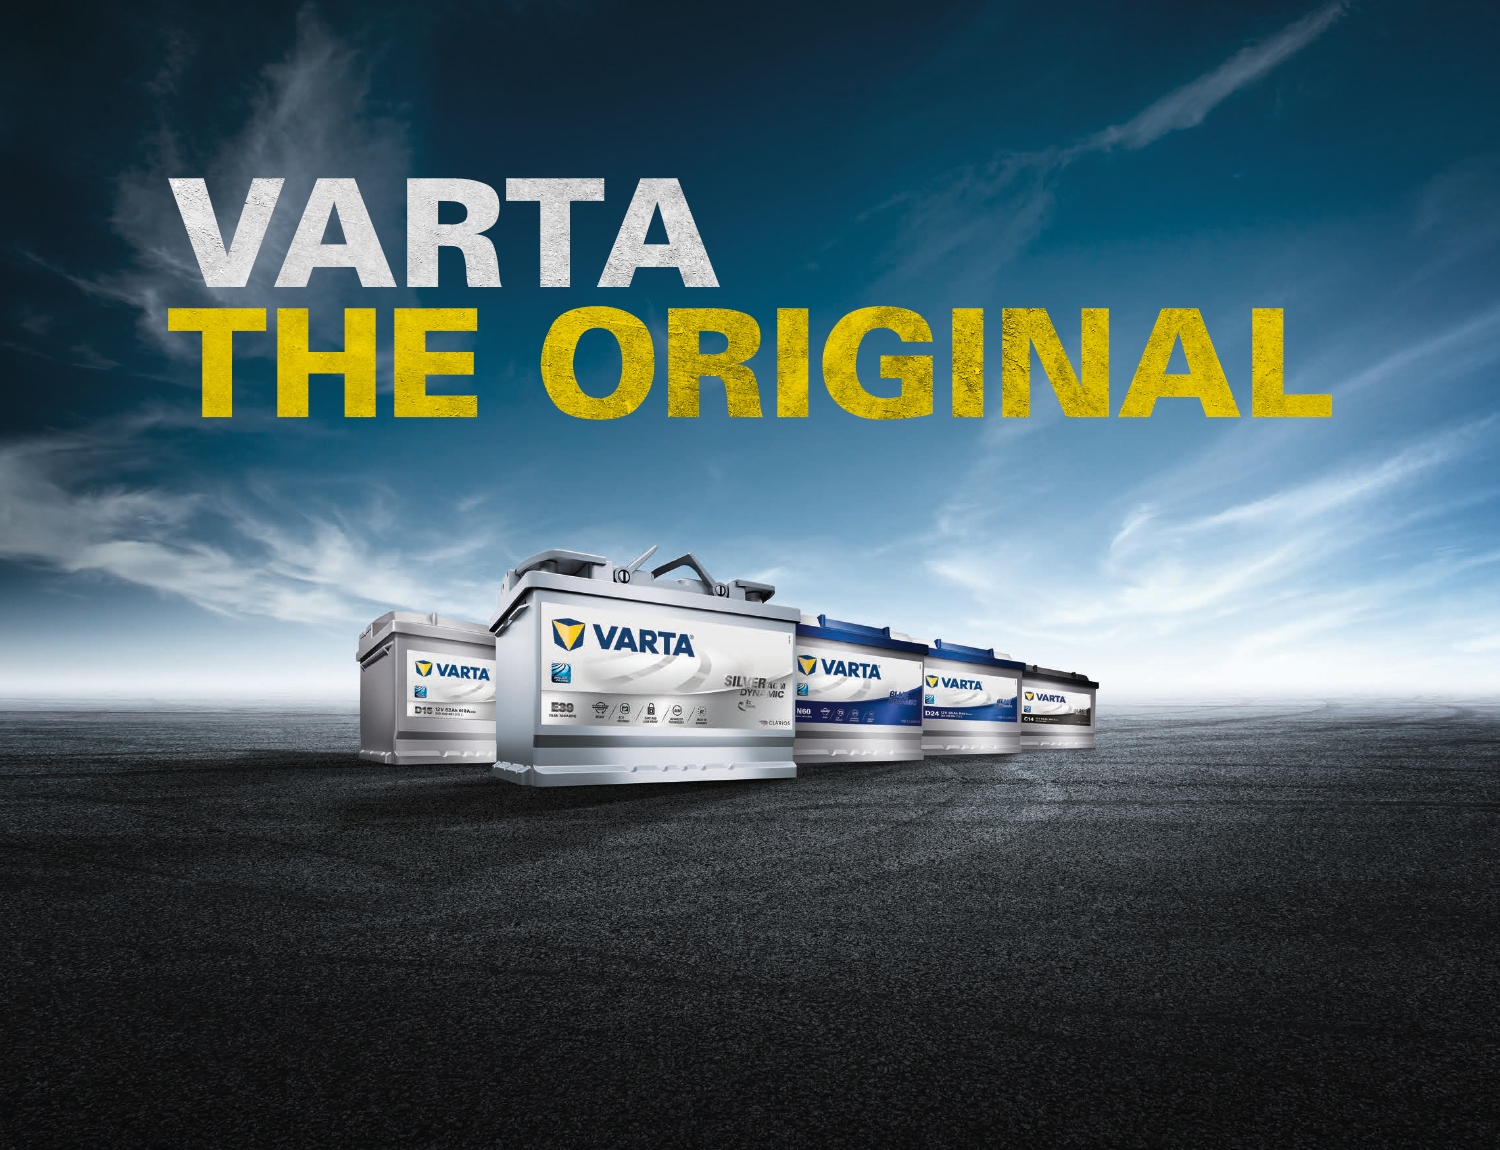 Soldes VARTA LED70 Professional EFB 12V 70Ah 760A 2024 au meilleur prix sur